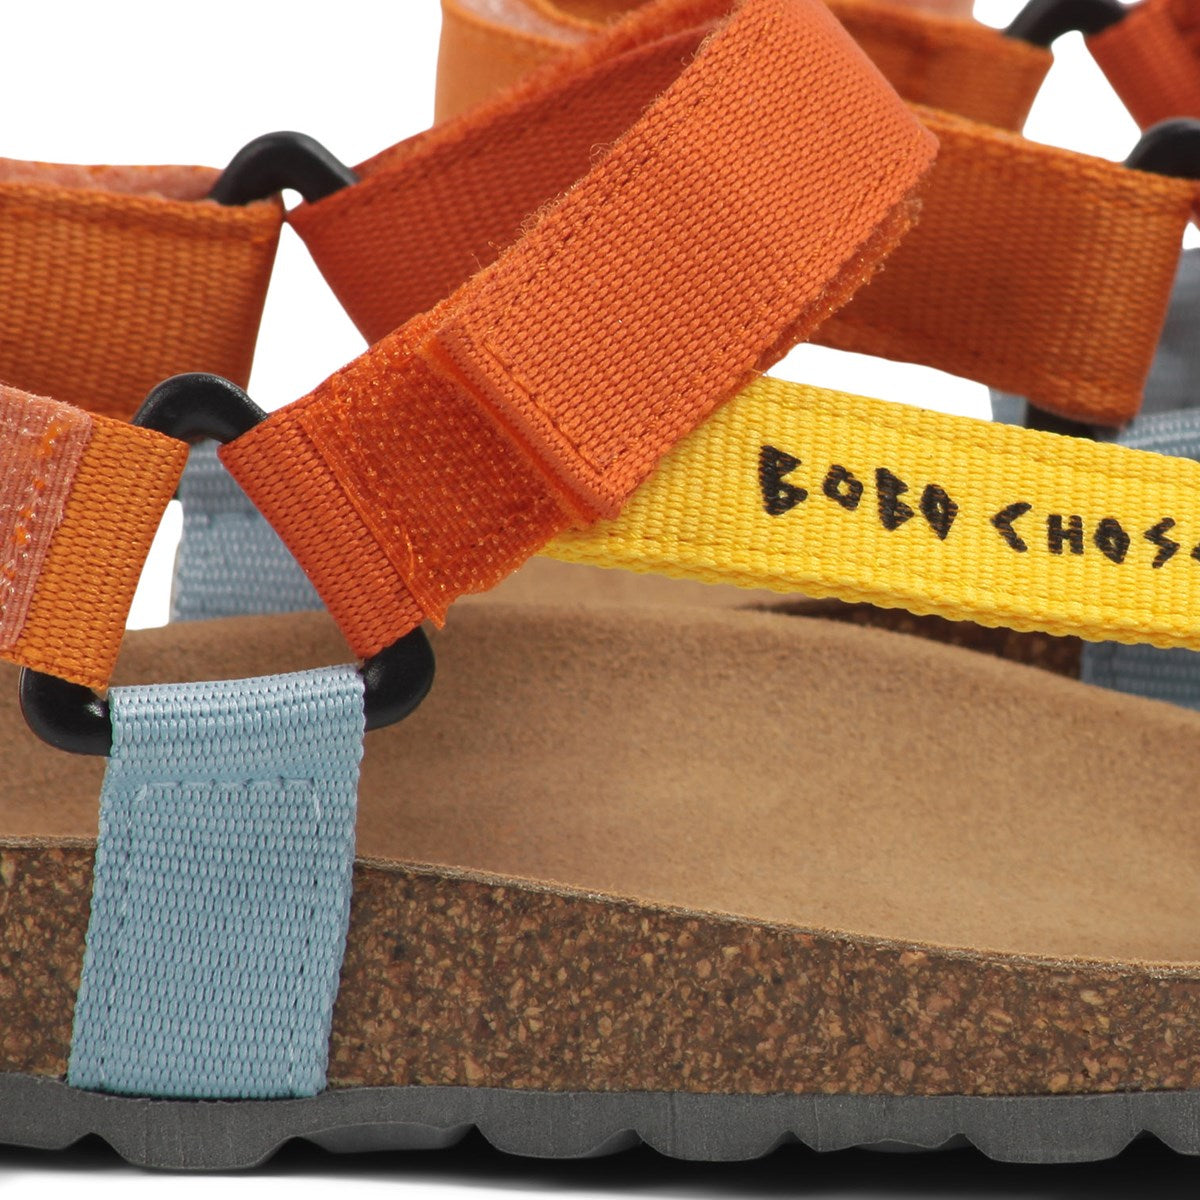 Color Block Velcro Strap Sandals